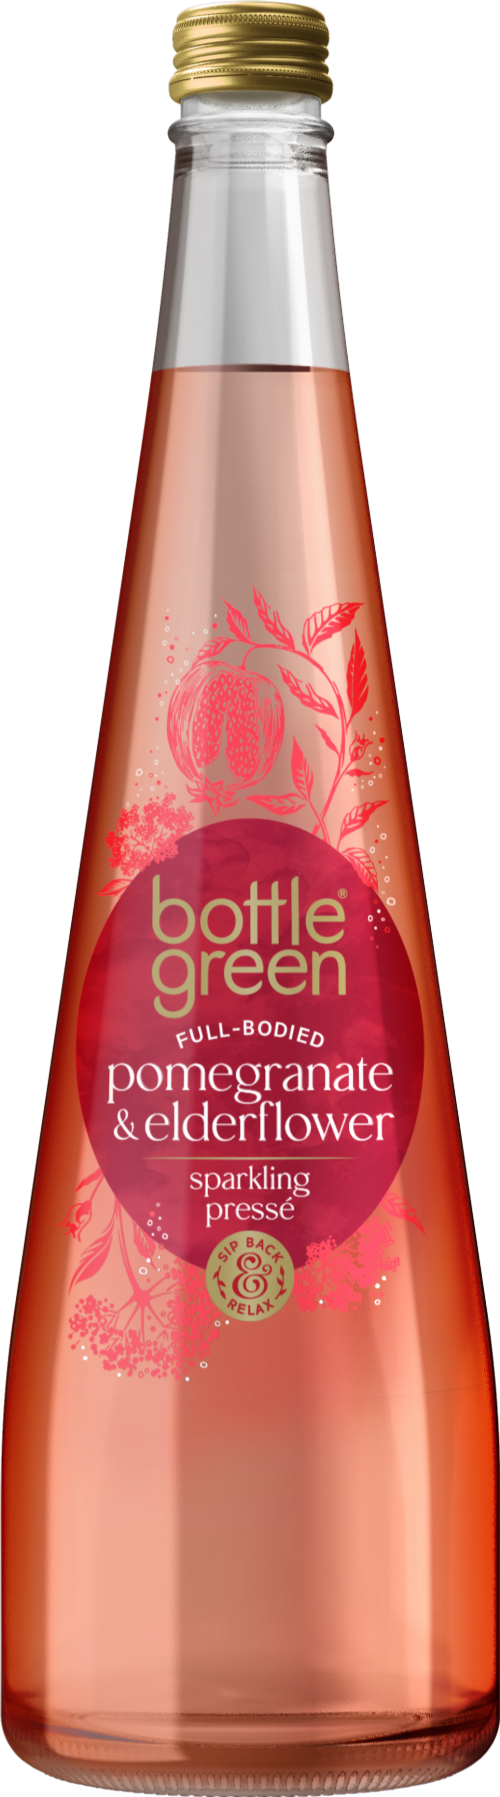 BOTTLEGREEN Pomegranate & Elderflower Presse 750ml